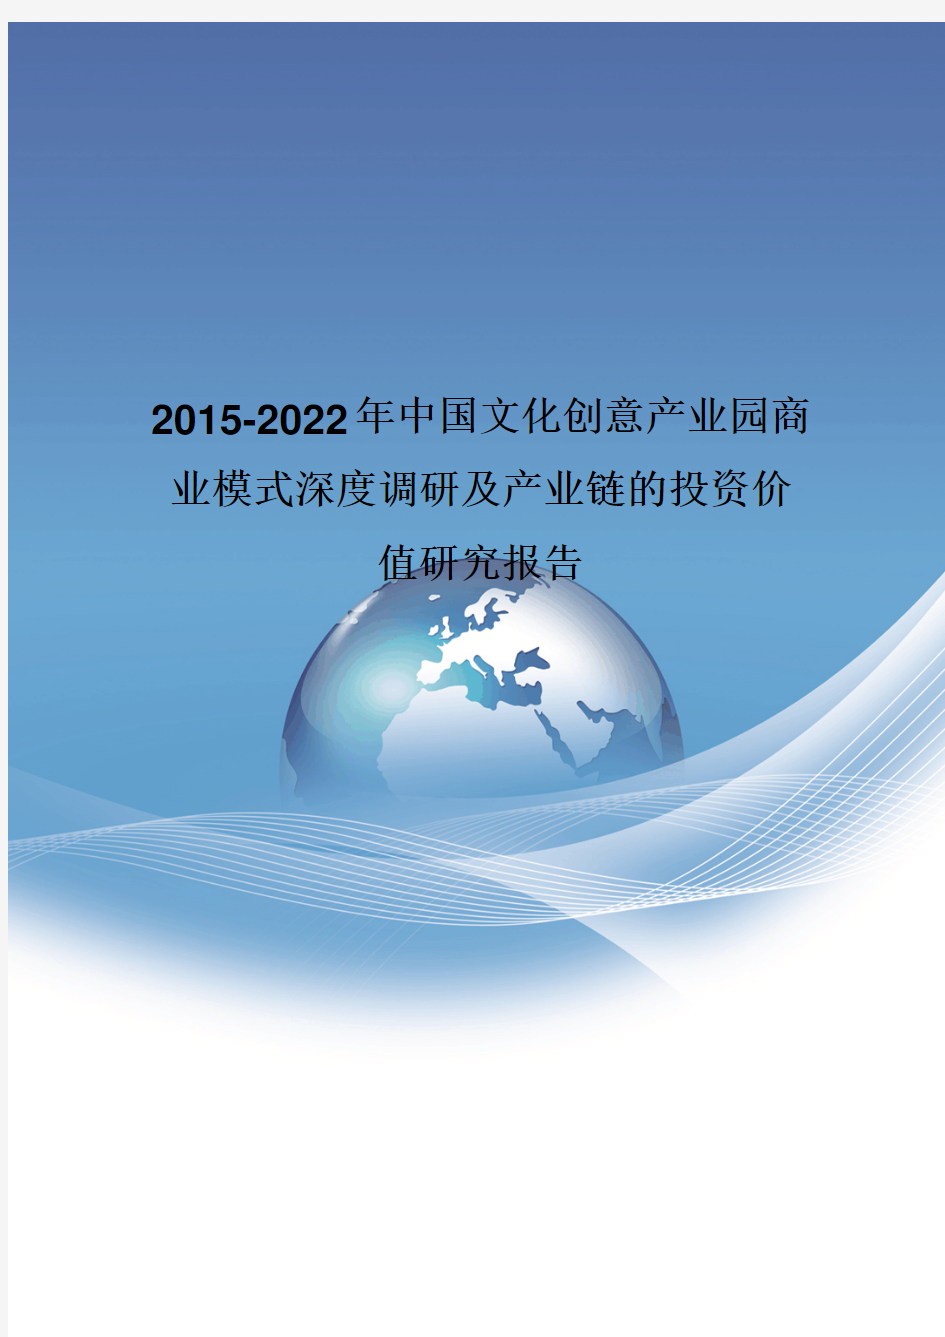 2015-2022年中国文化创意产业园商业模式深度调研报告